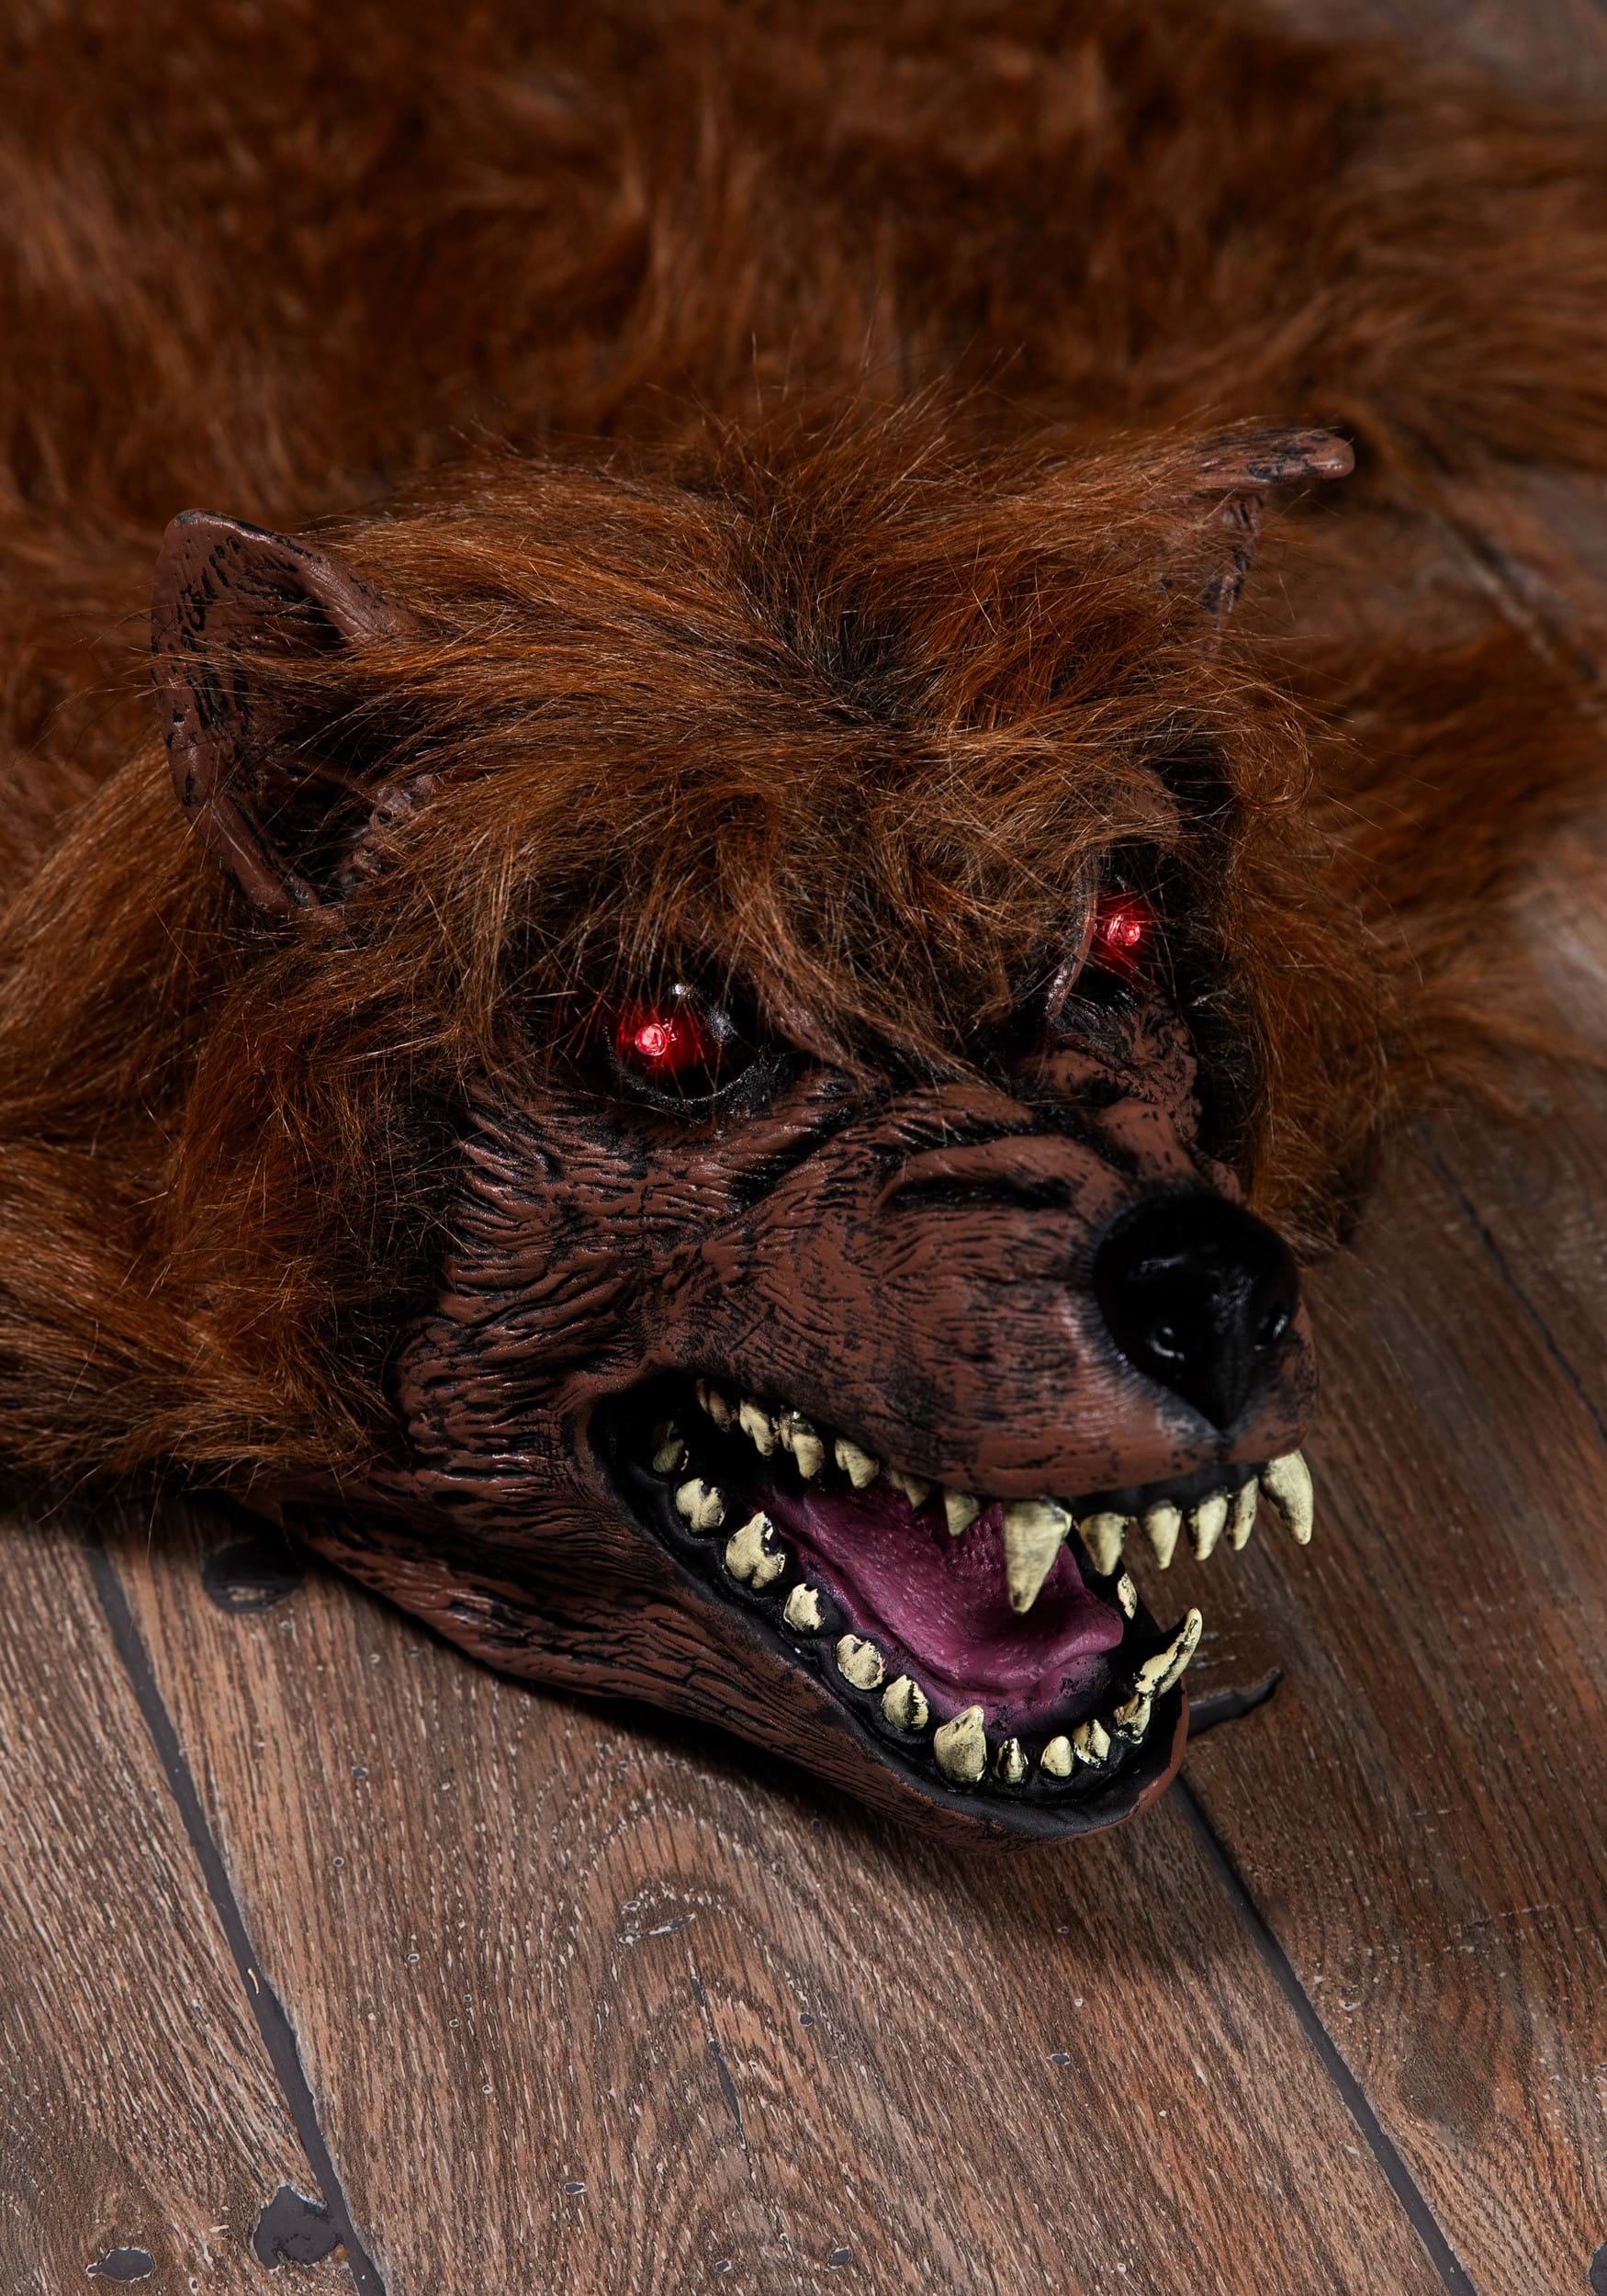 Brown Werewolf Rug With Light And Sound Decoration , Werewolf Decorations